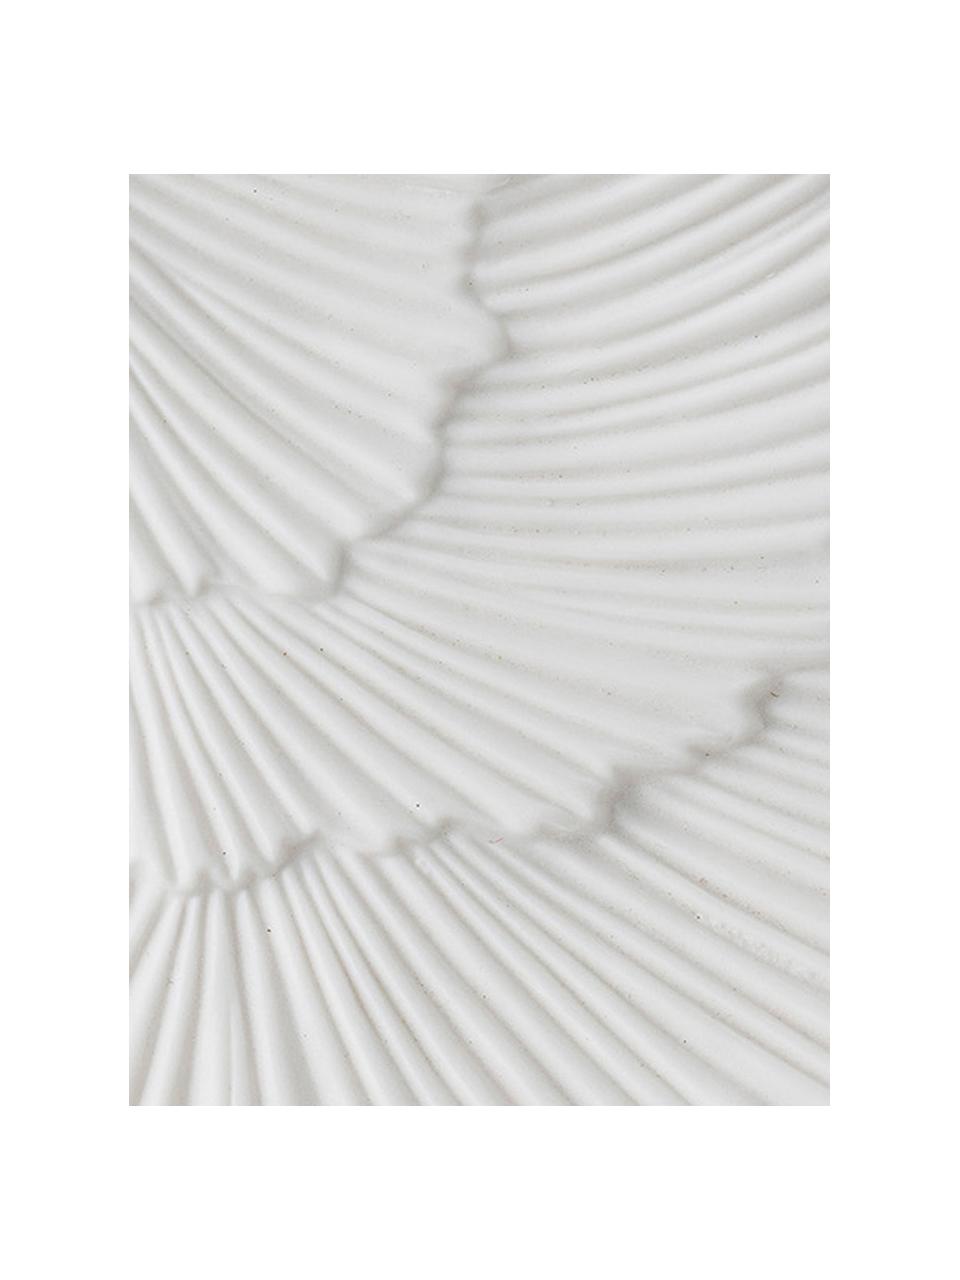 Deko-Schale Inge, Porzellan, Weiß, 10 x 21 cm